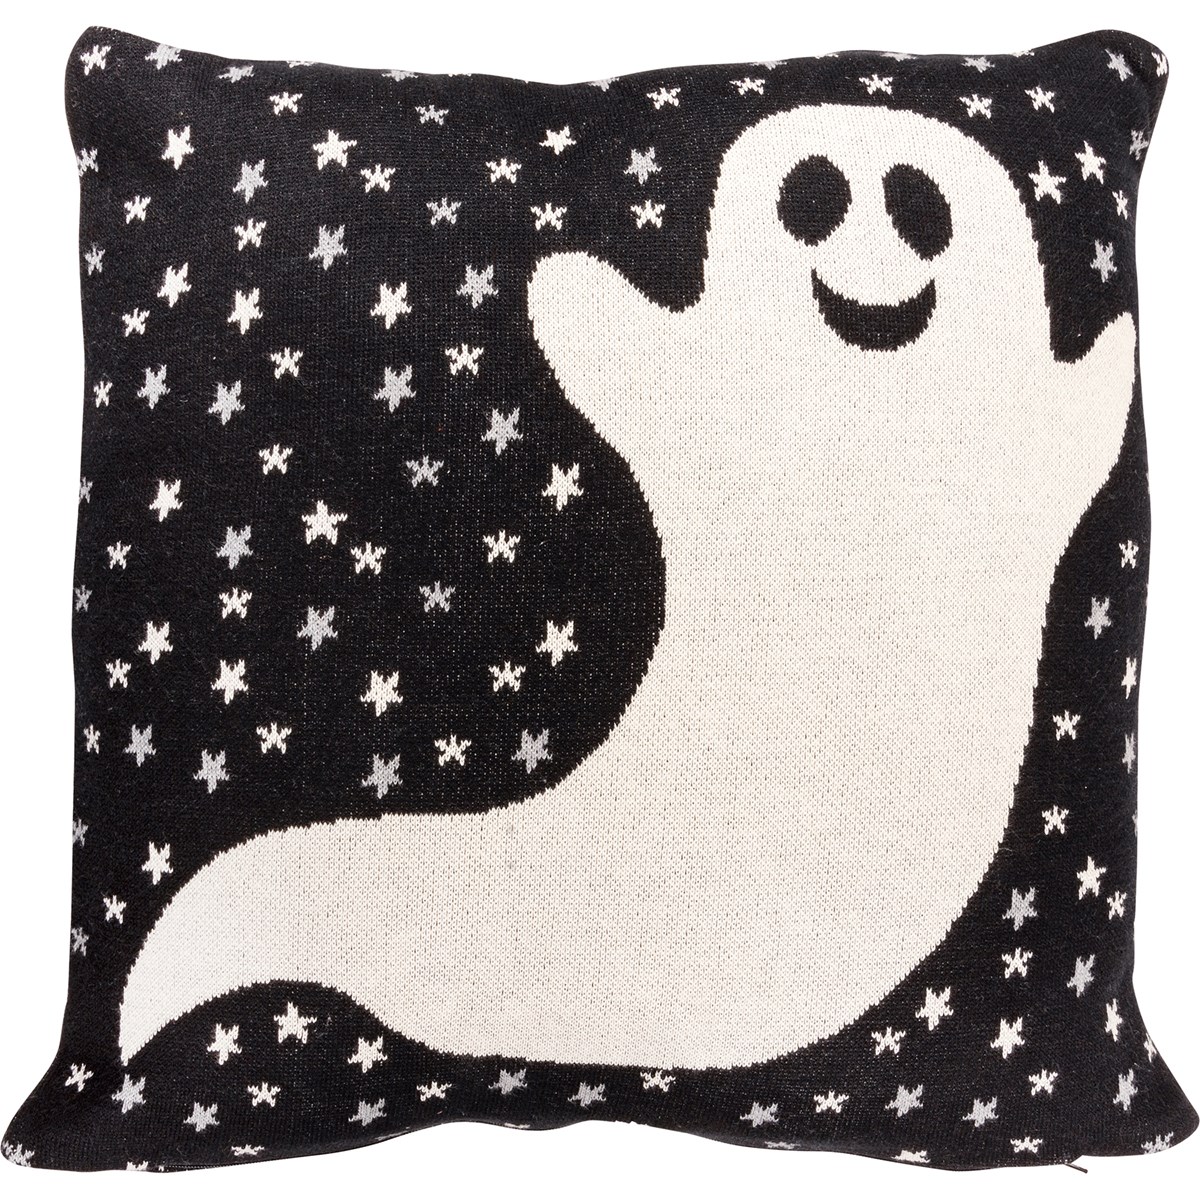 Ghost Pillow - Cotton, Zipper